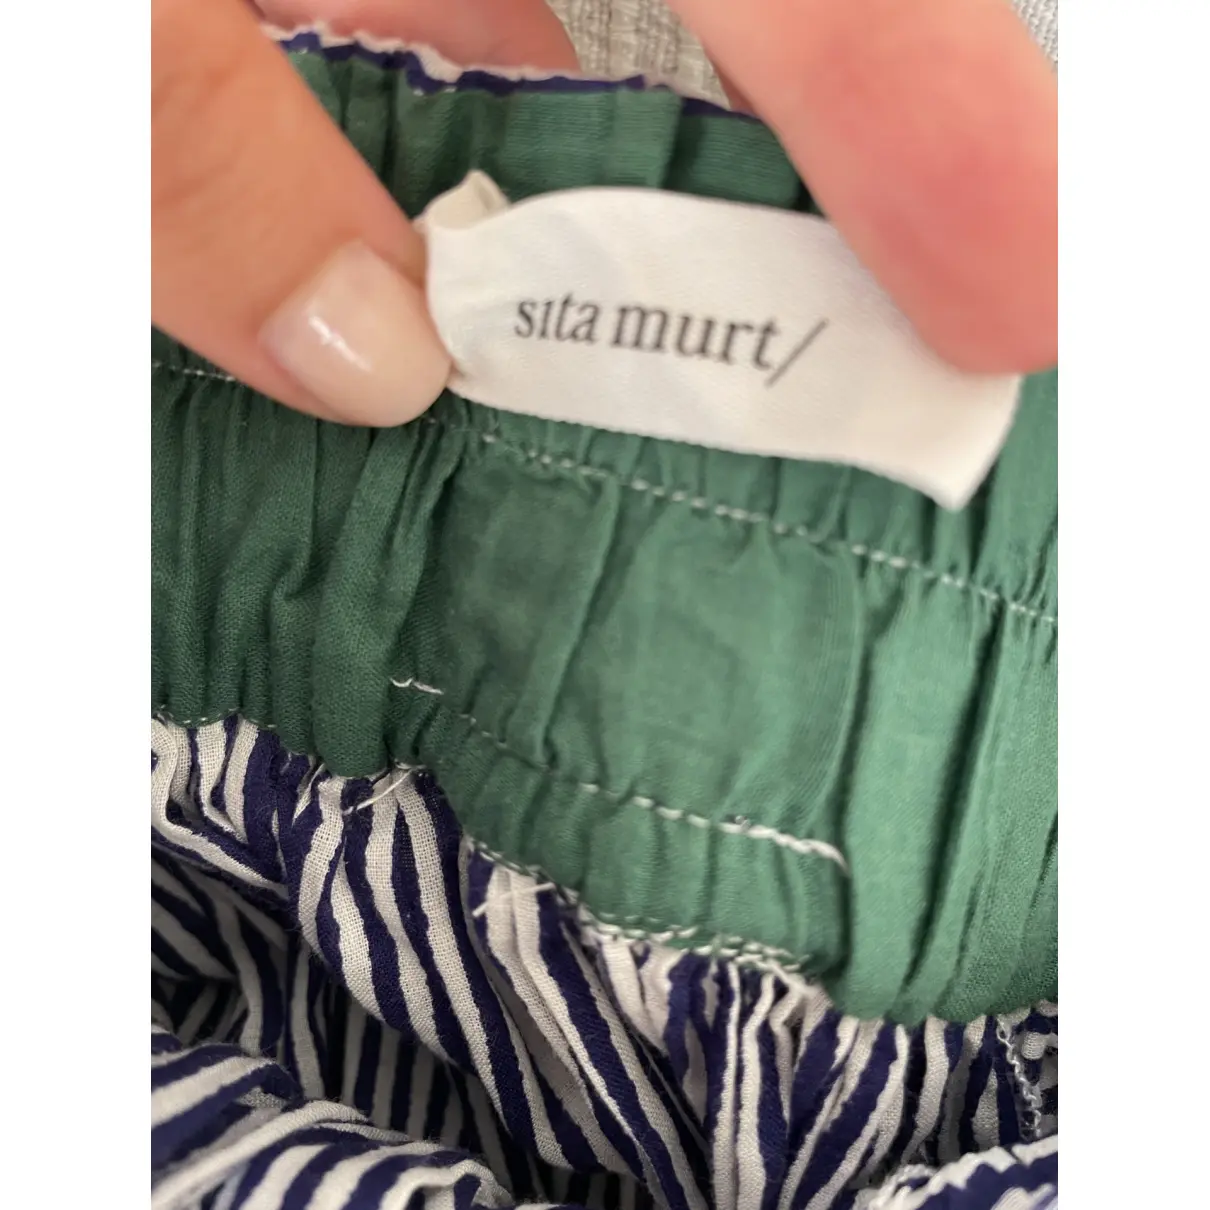 Buy SITA MURT Skirt online